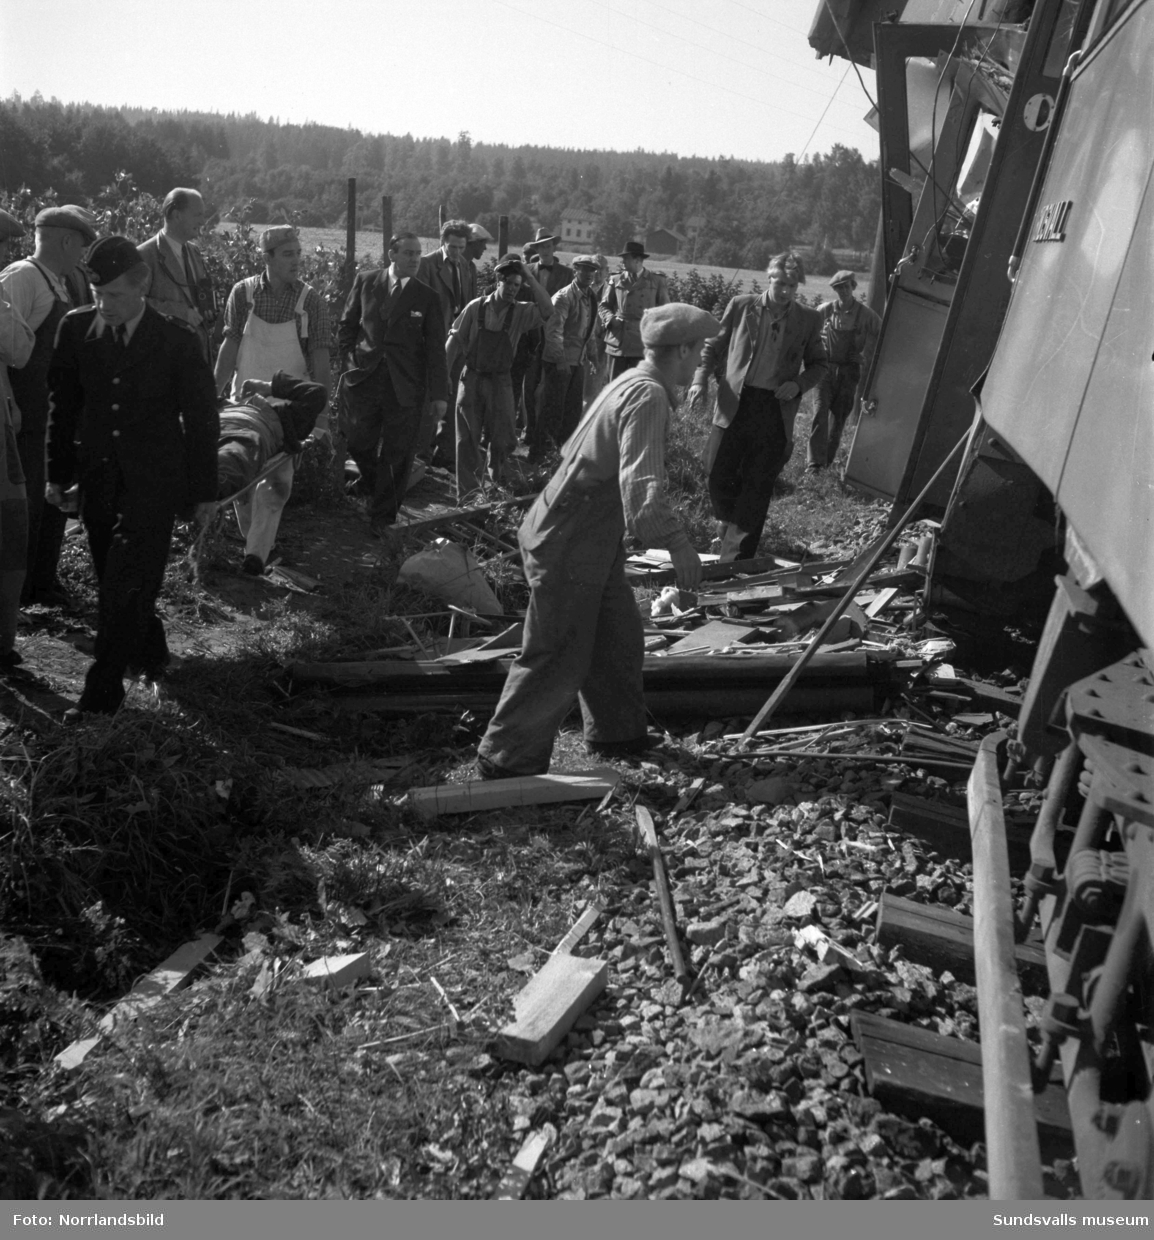 En morgon i slutet av augusti 1949 frontalkrockade två spårvagnar vid Tunadal. Olyckan ska ha orsakats av en missuppfattad order i samband med att en av vagnarna fått problem med strömförsörjningen. 22 personer fördes till sjukhus, varav två med allvarliga skador.